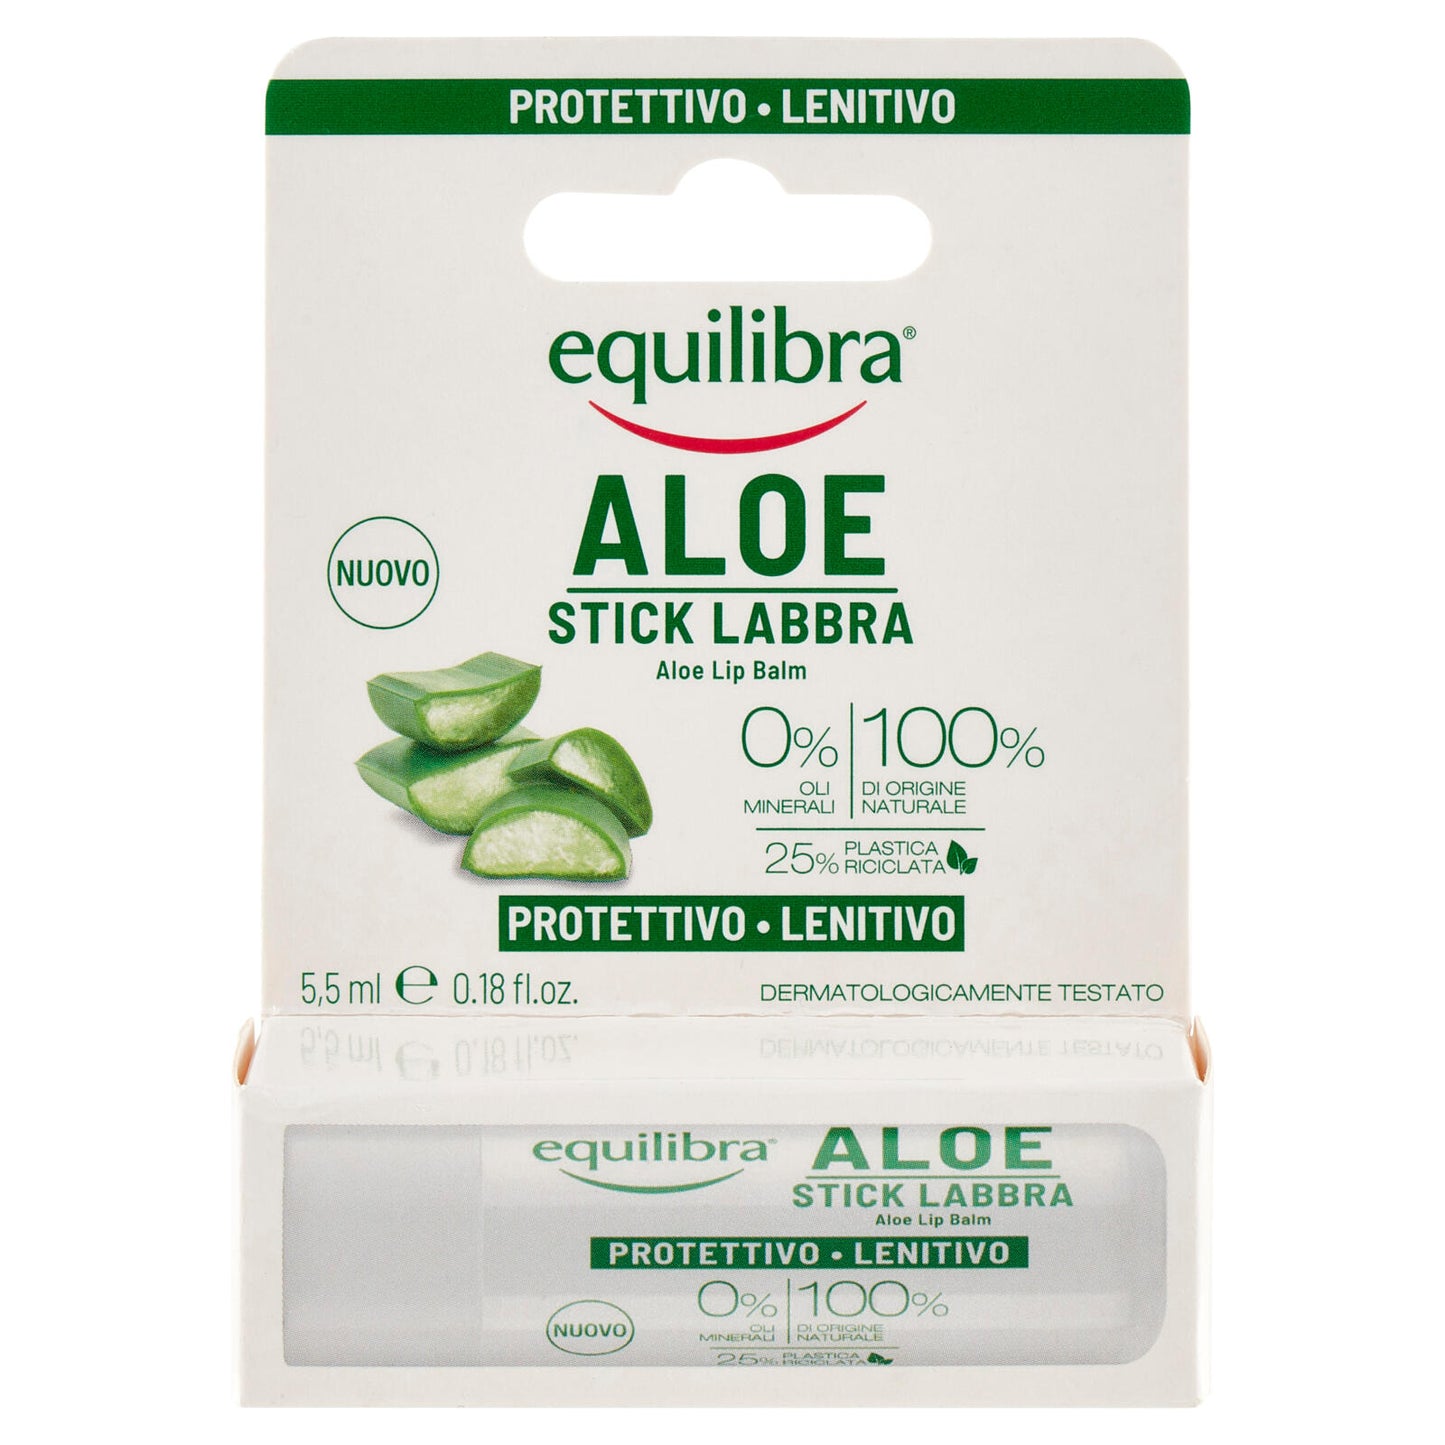 equilibra Aloe Stick Labbra Protettivo - Lenitivo 5,5 ml